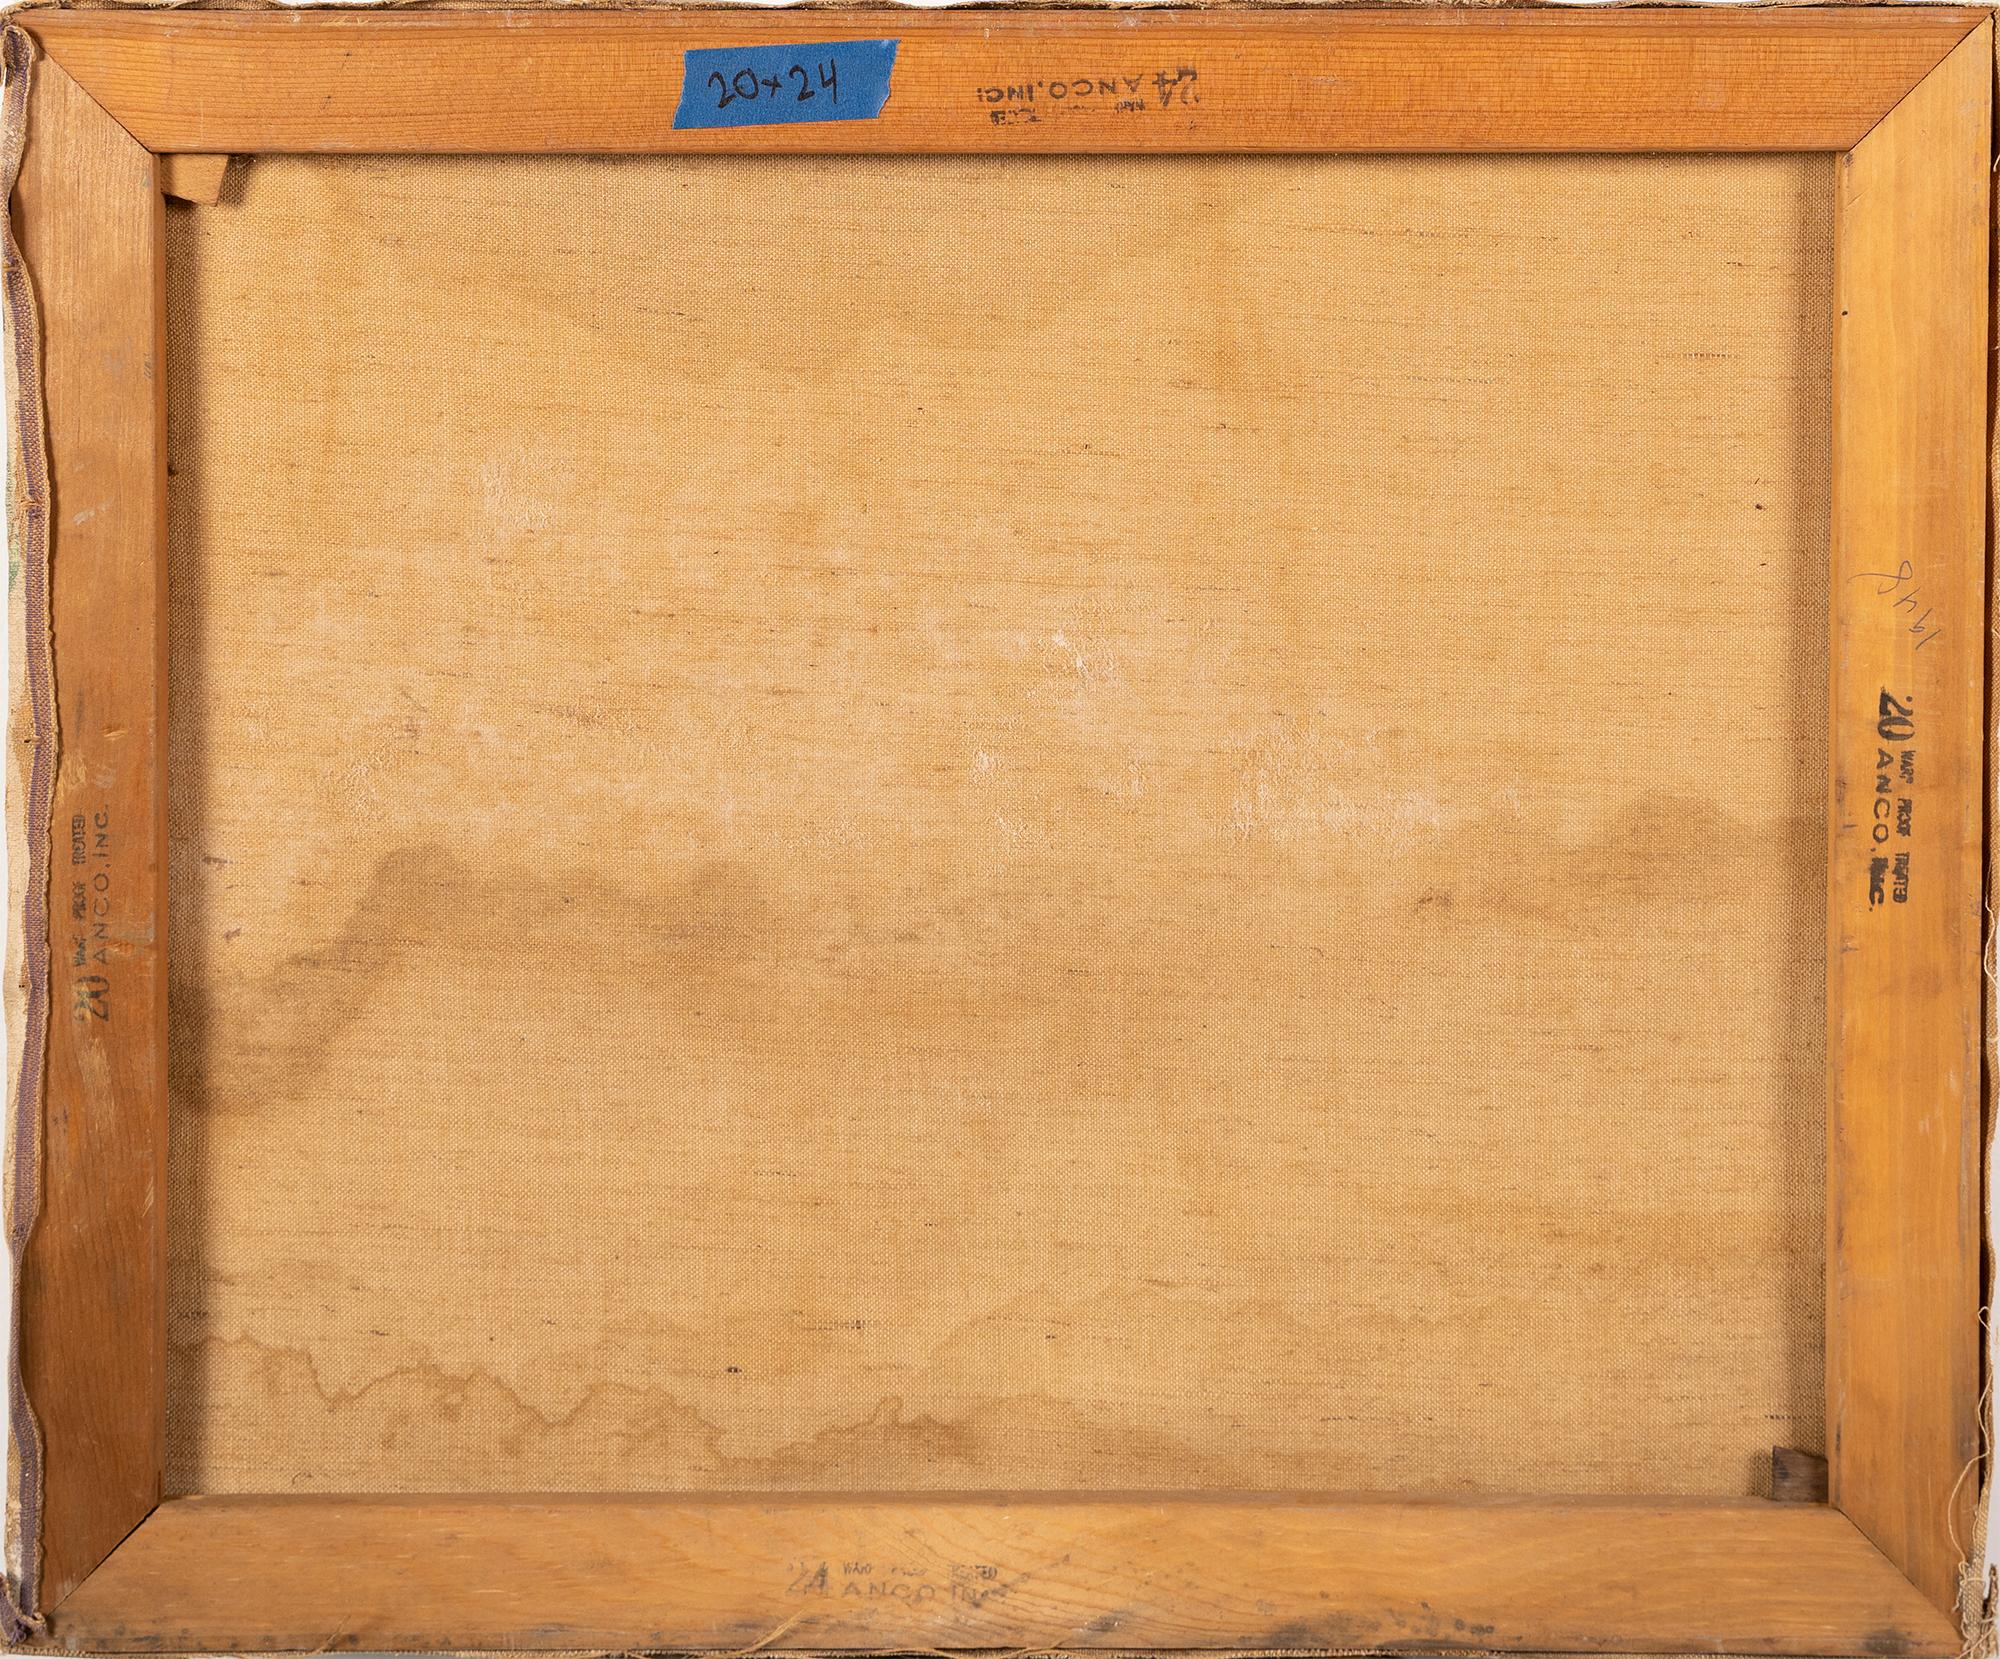 Ancienne peinture à l'huile cubiste abstraite américaine de type table top still life.  Huile sur toile, vers 1930.  Aucune signature n'a été trouvée.  Taille de l'image : 20L x 16H.  Encadrement disponible. 